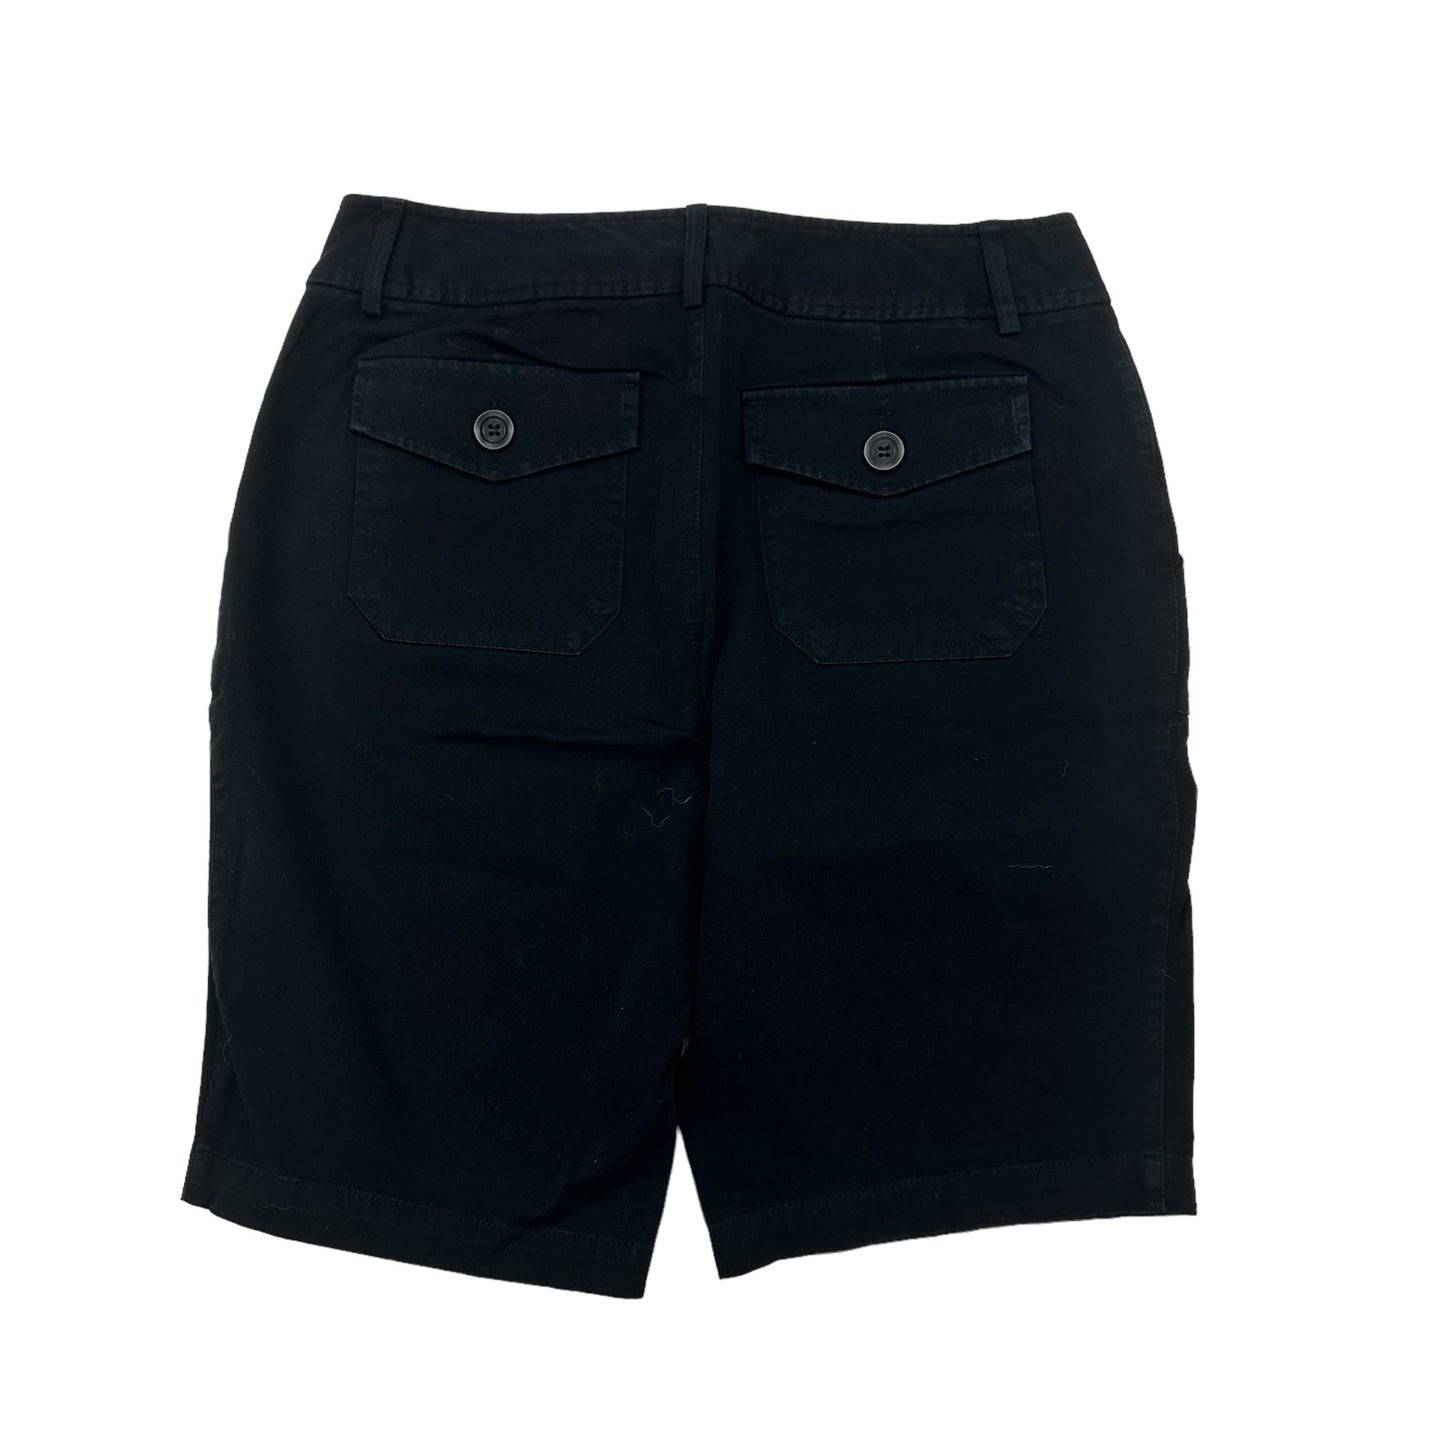 Black Shorts Inc, Size 6